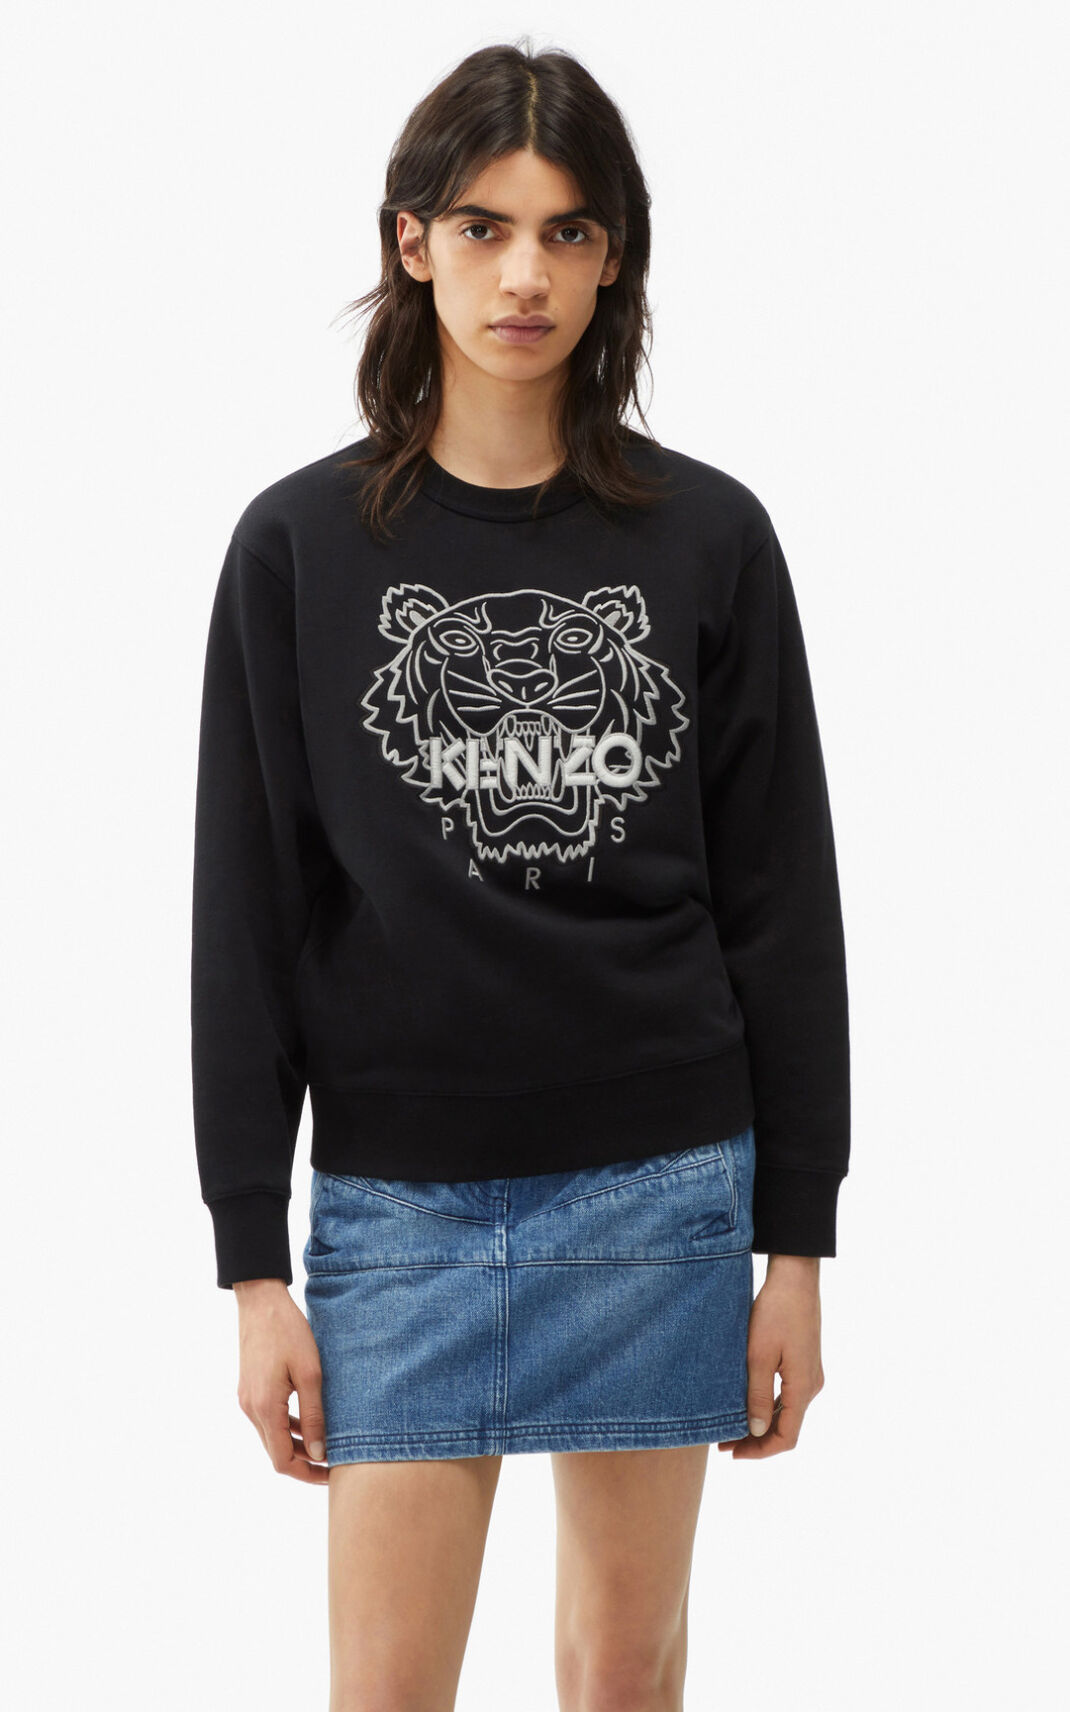 Kenzo Tiger Sweatshirt Black For Womens 1762CIQAK